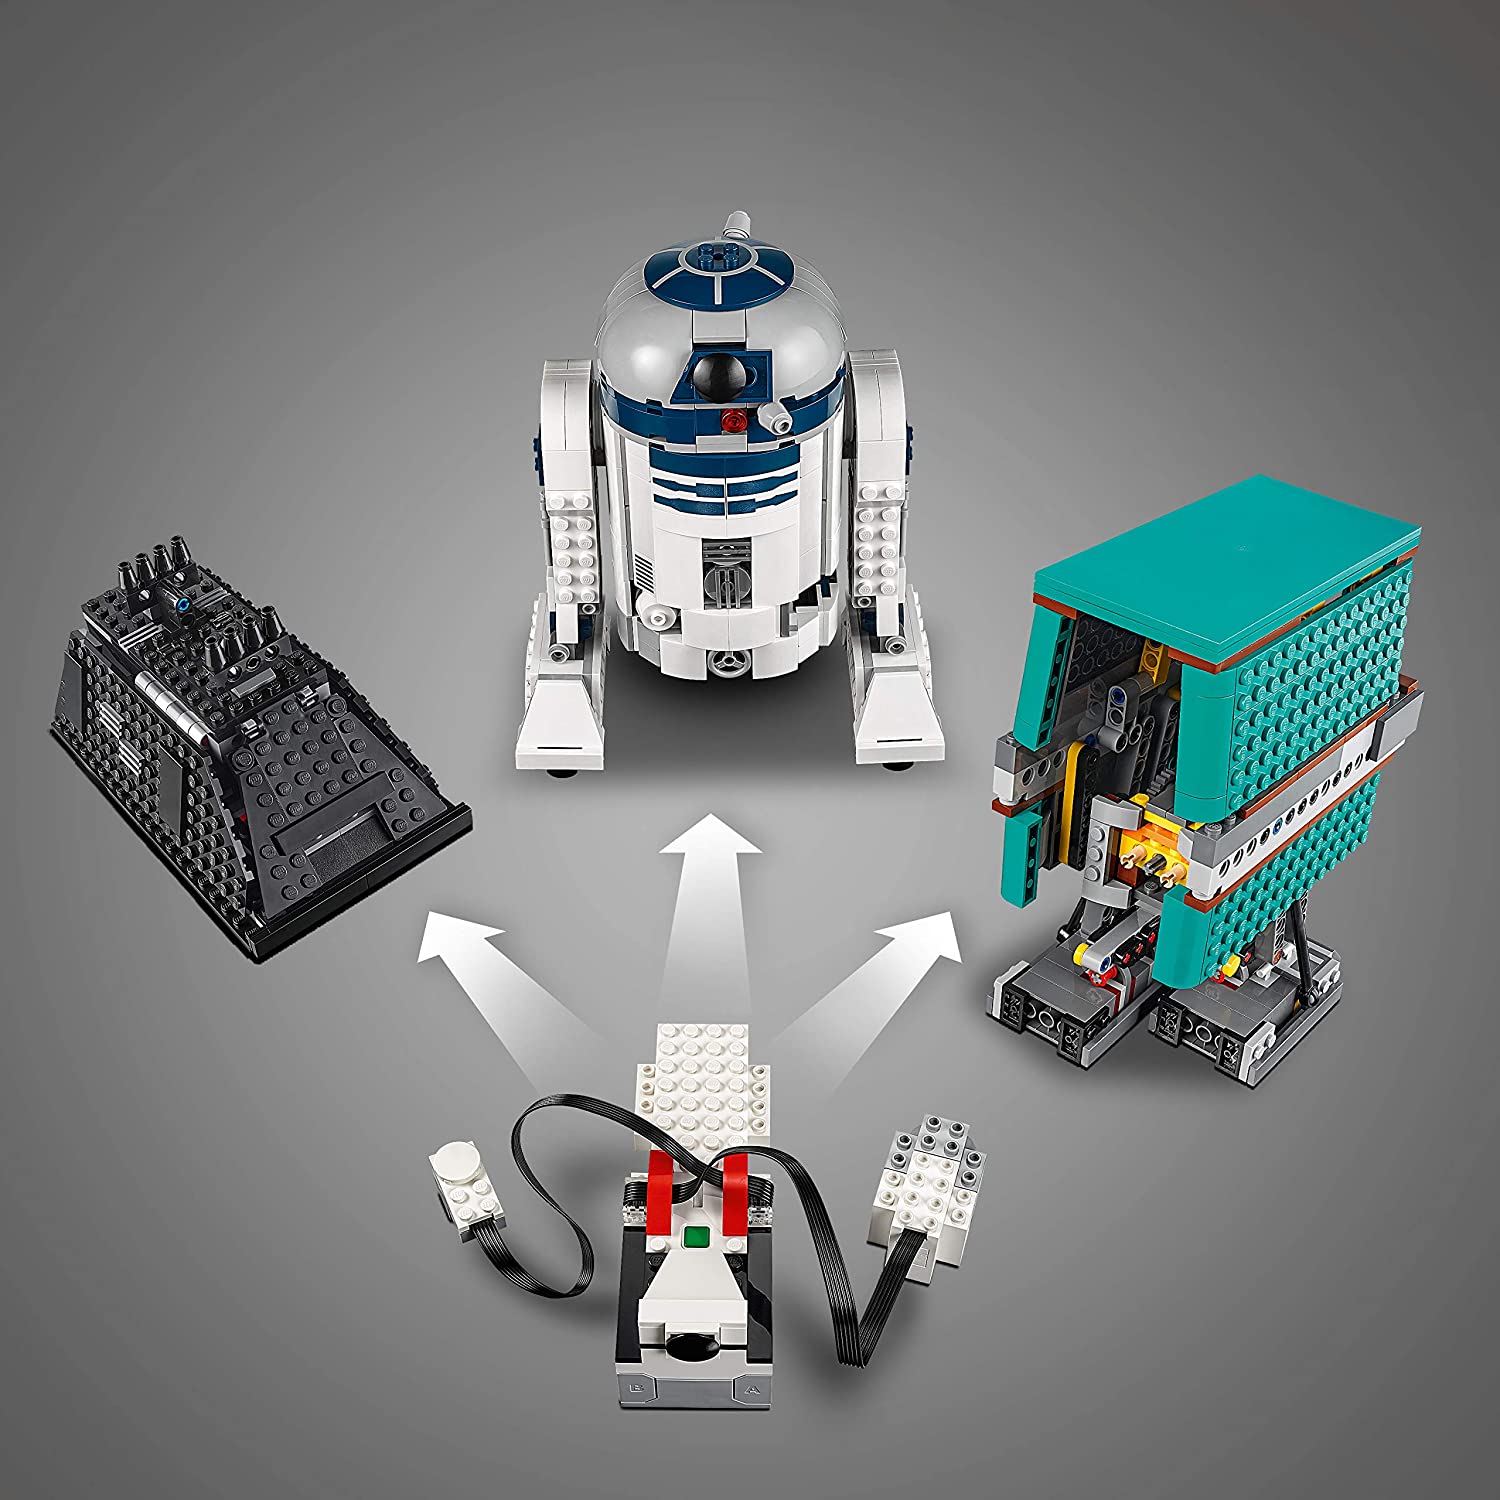 Increóbles robots LEGO con la temática STARS WARS que pueden construir y programas los niños de Cáceres